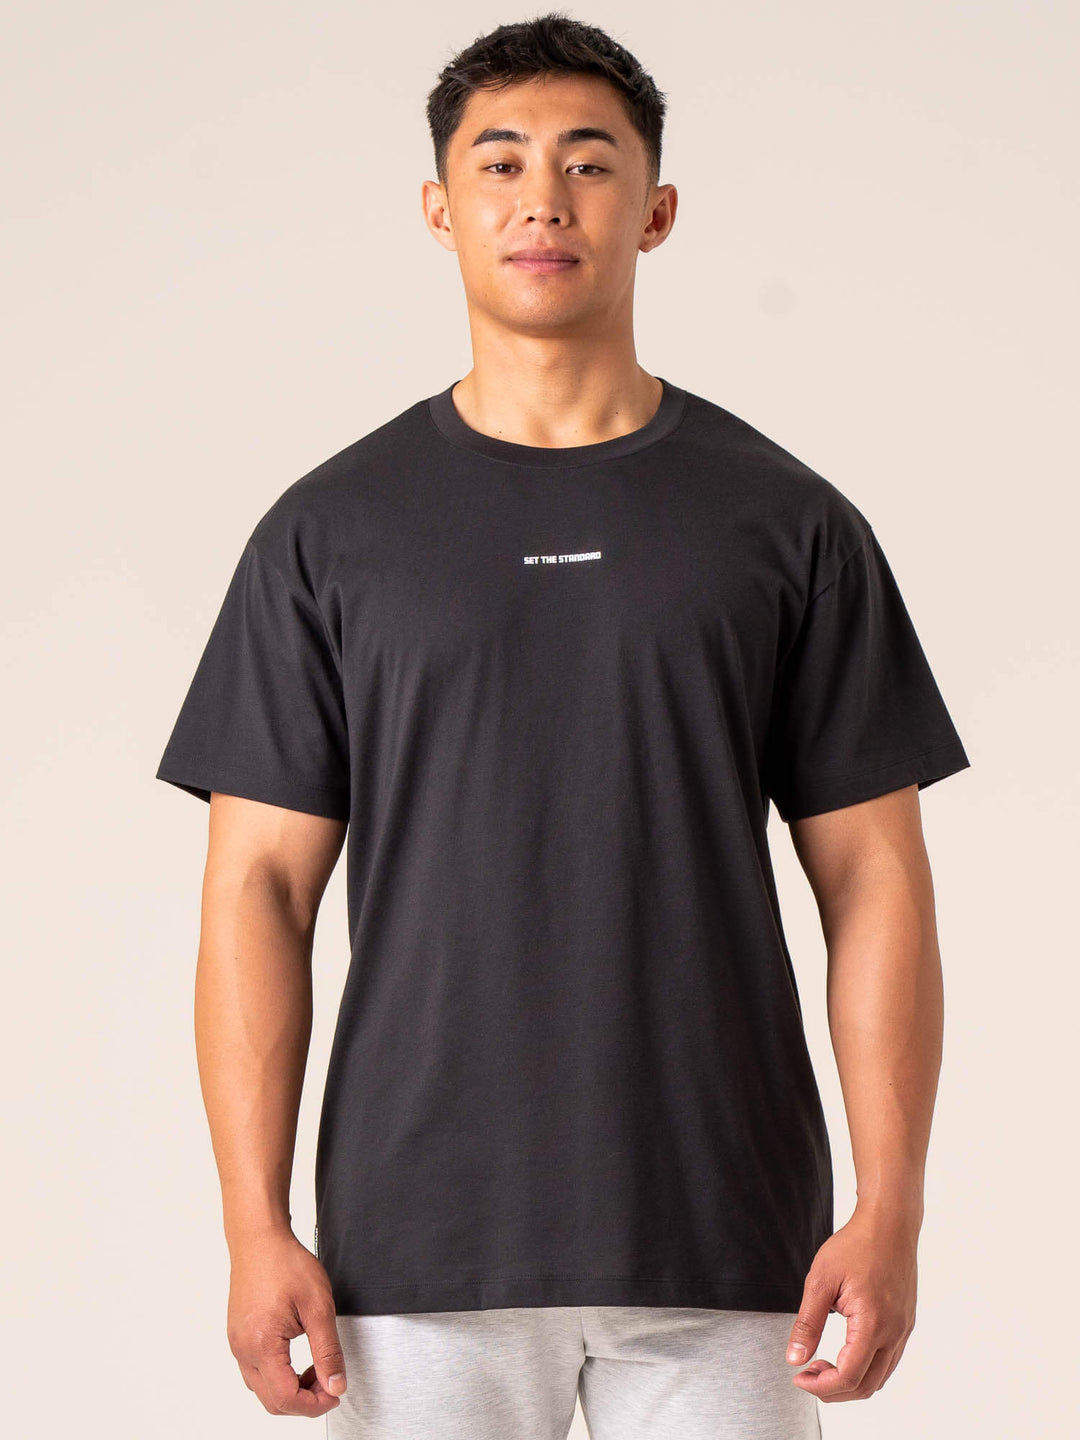 Emerge Oversized T-Shirt - Faded Black Clothing Ryderwear 